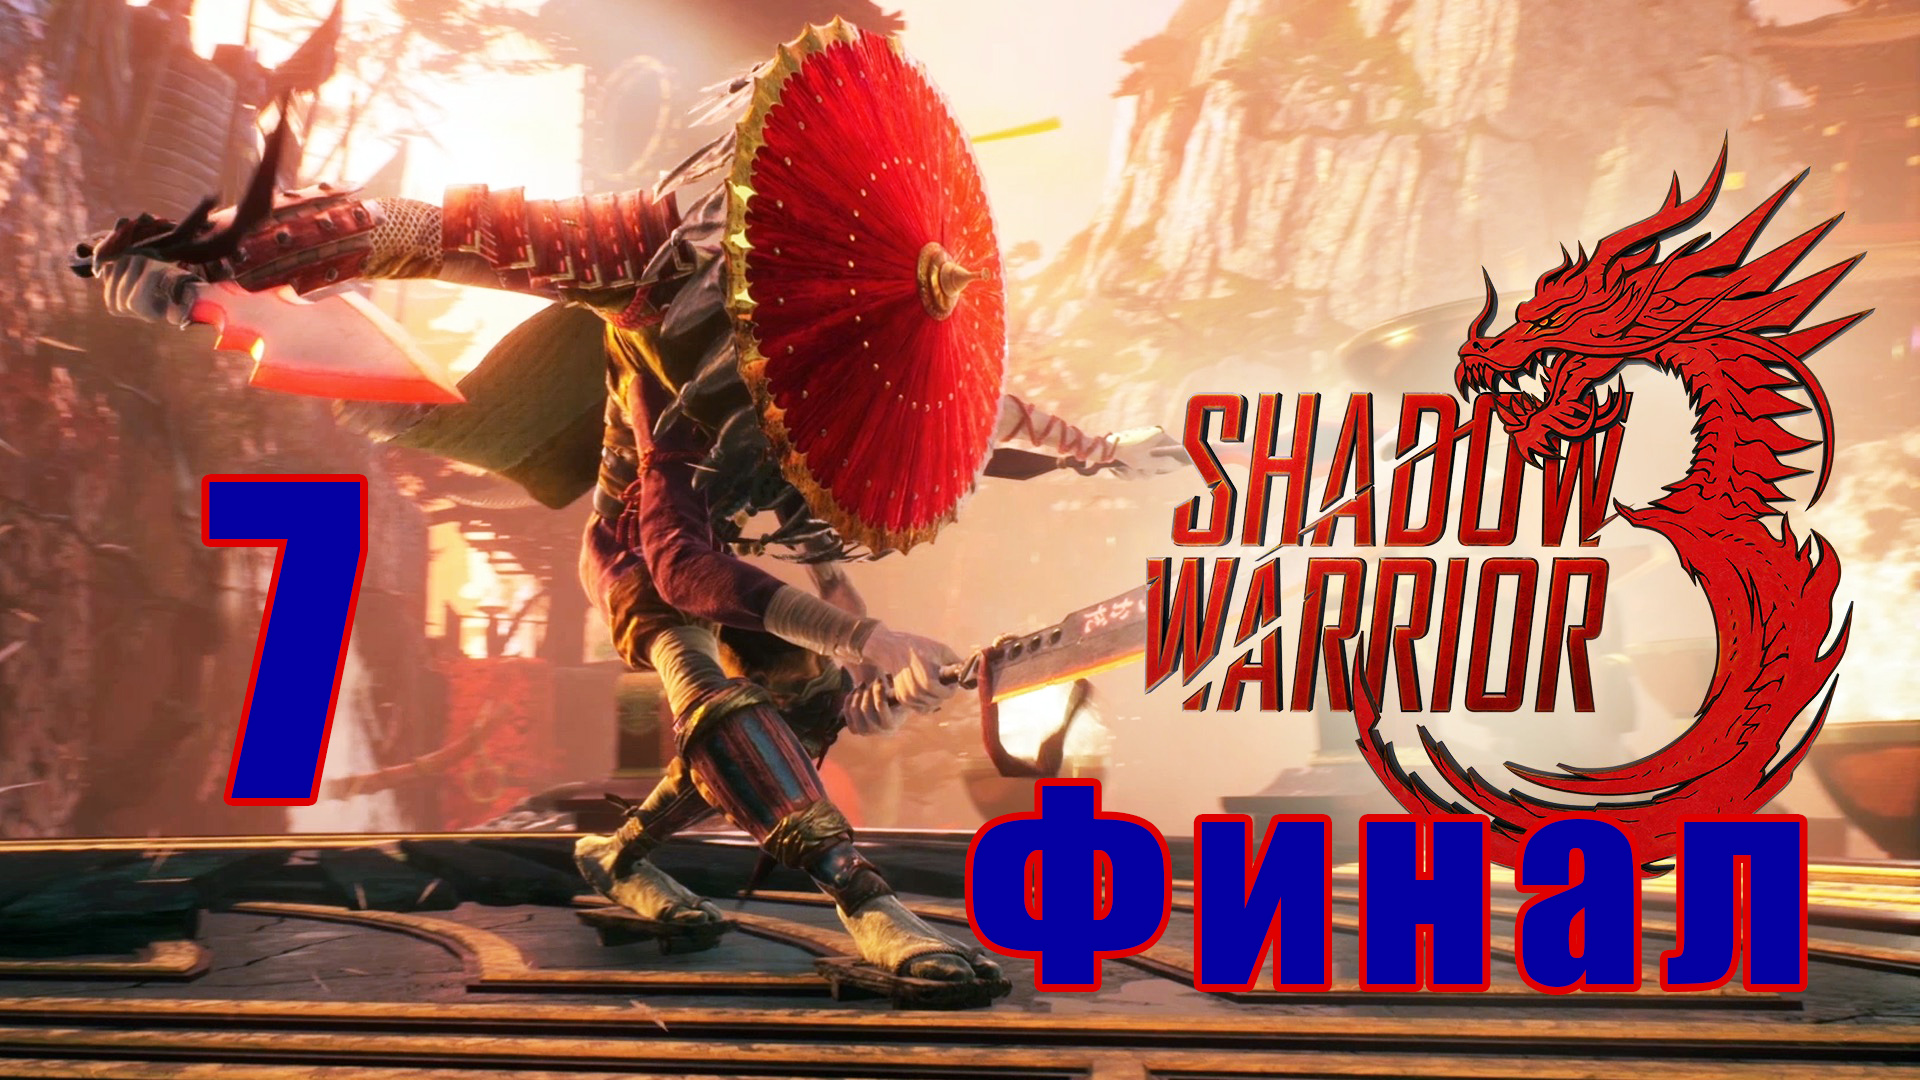 ФИНАЛ - Shadow Warrior 3 - на ПК ➤ Прохождение # 7 ➤ 2K ➤